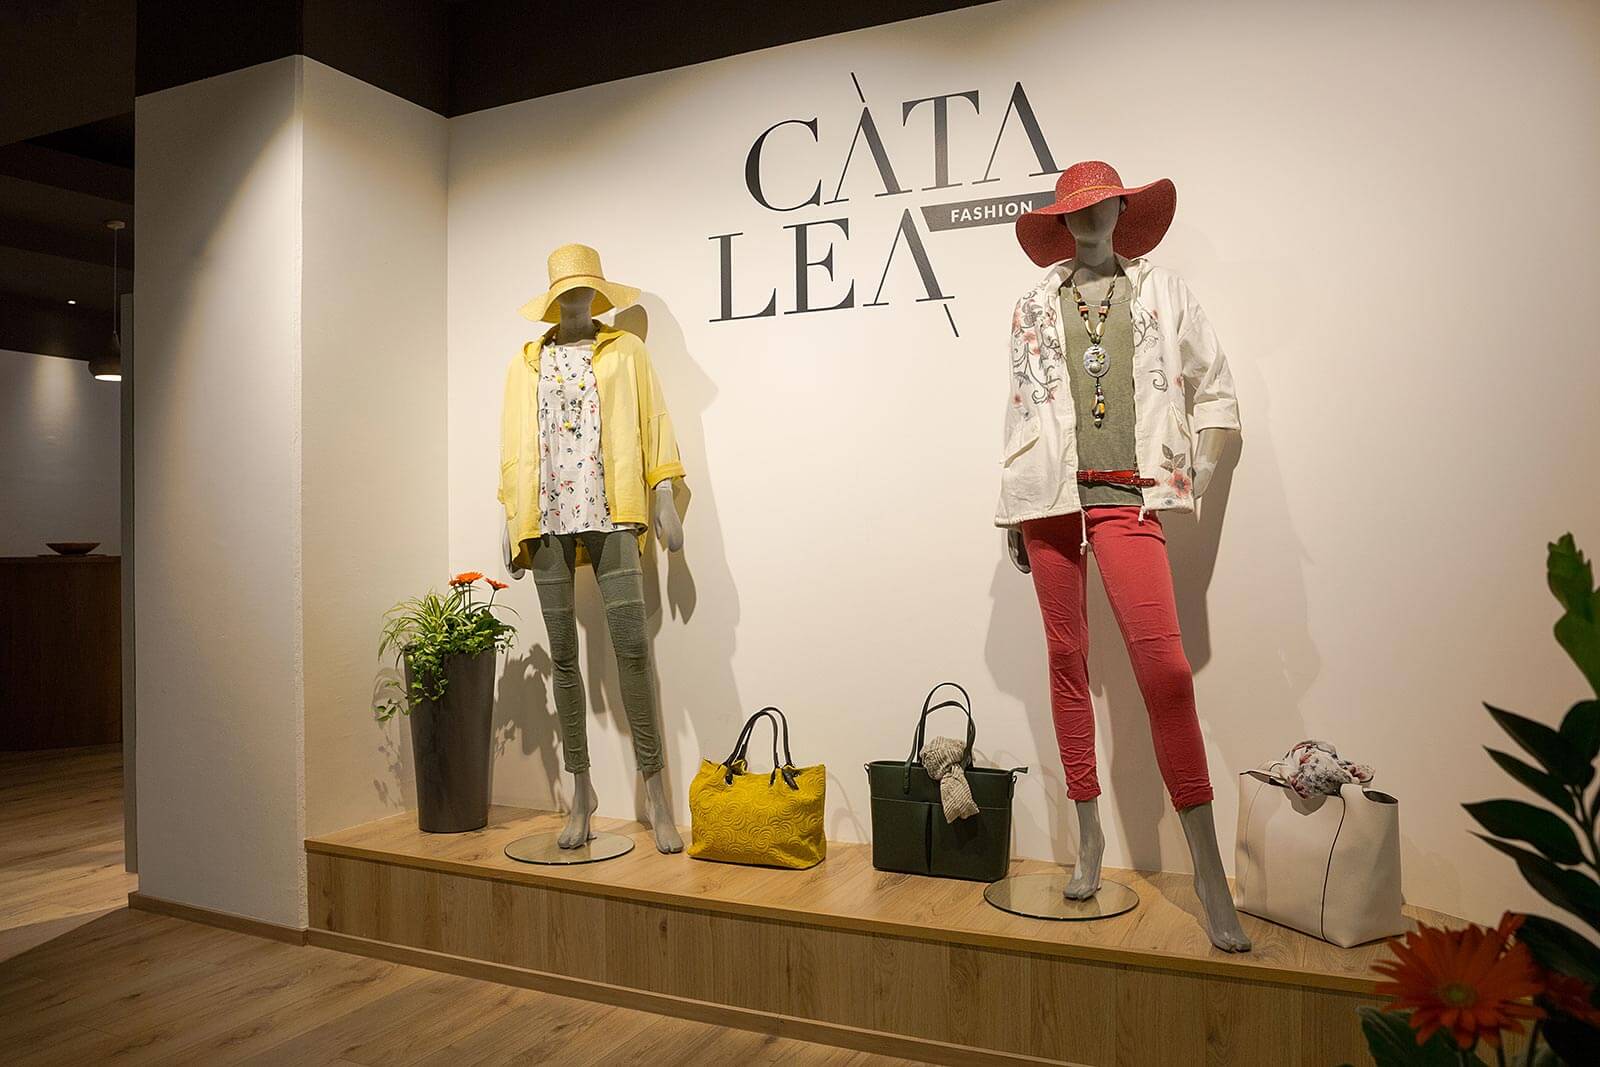 Catalea Fashion Wien